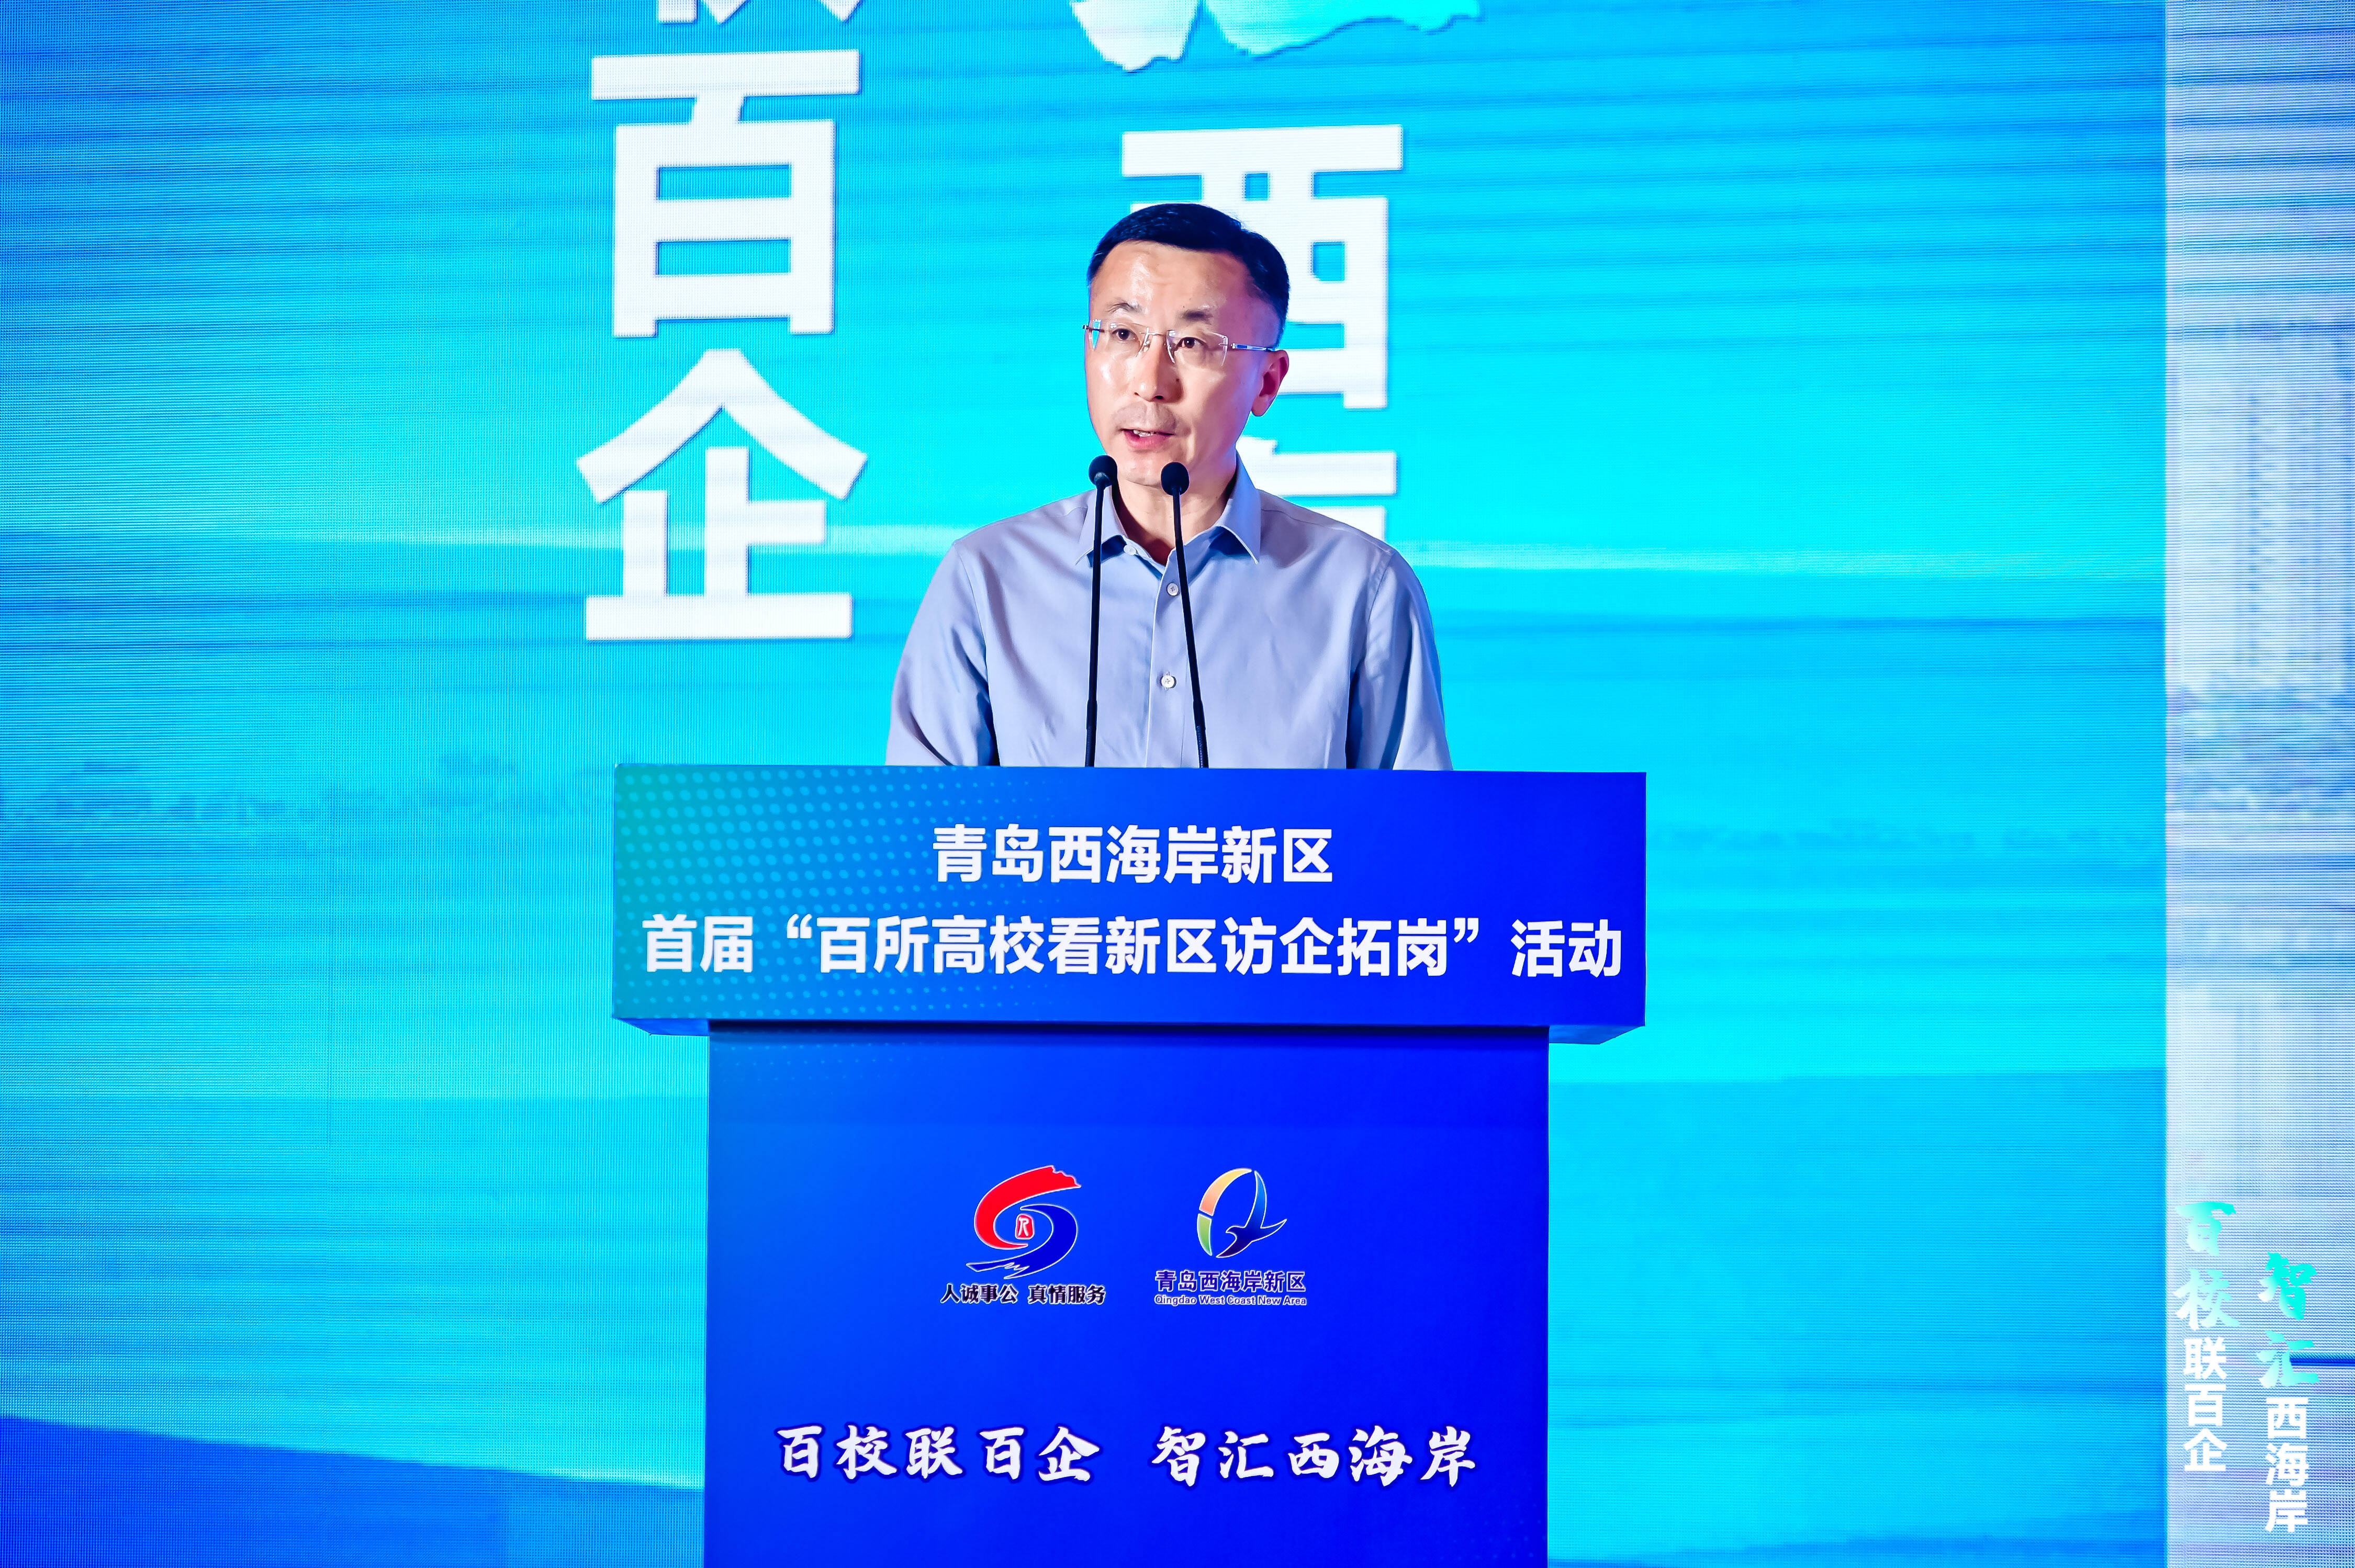 青岛西海岸新区副区长薛山从抓准国家战略叠加机遇,共享科技产业富集